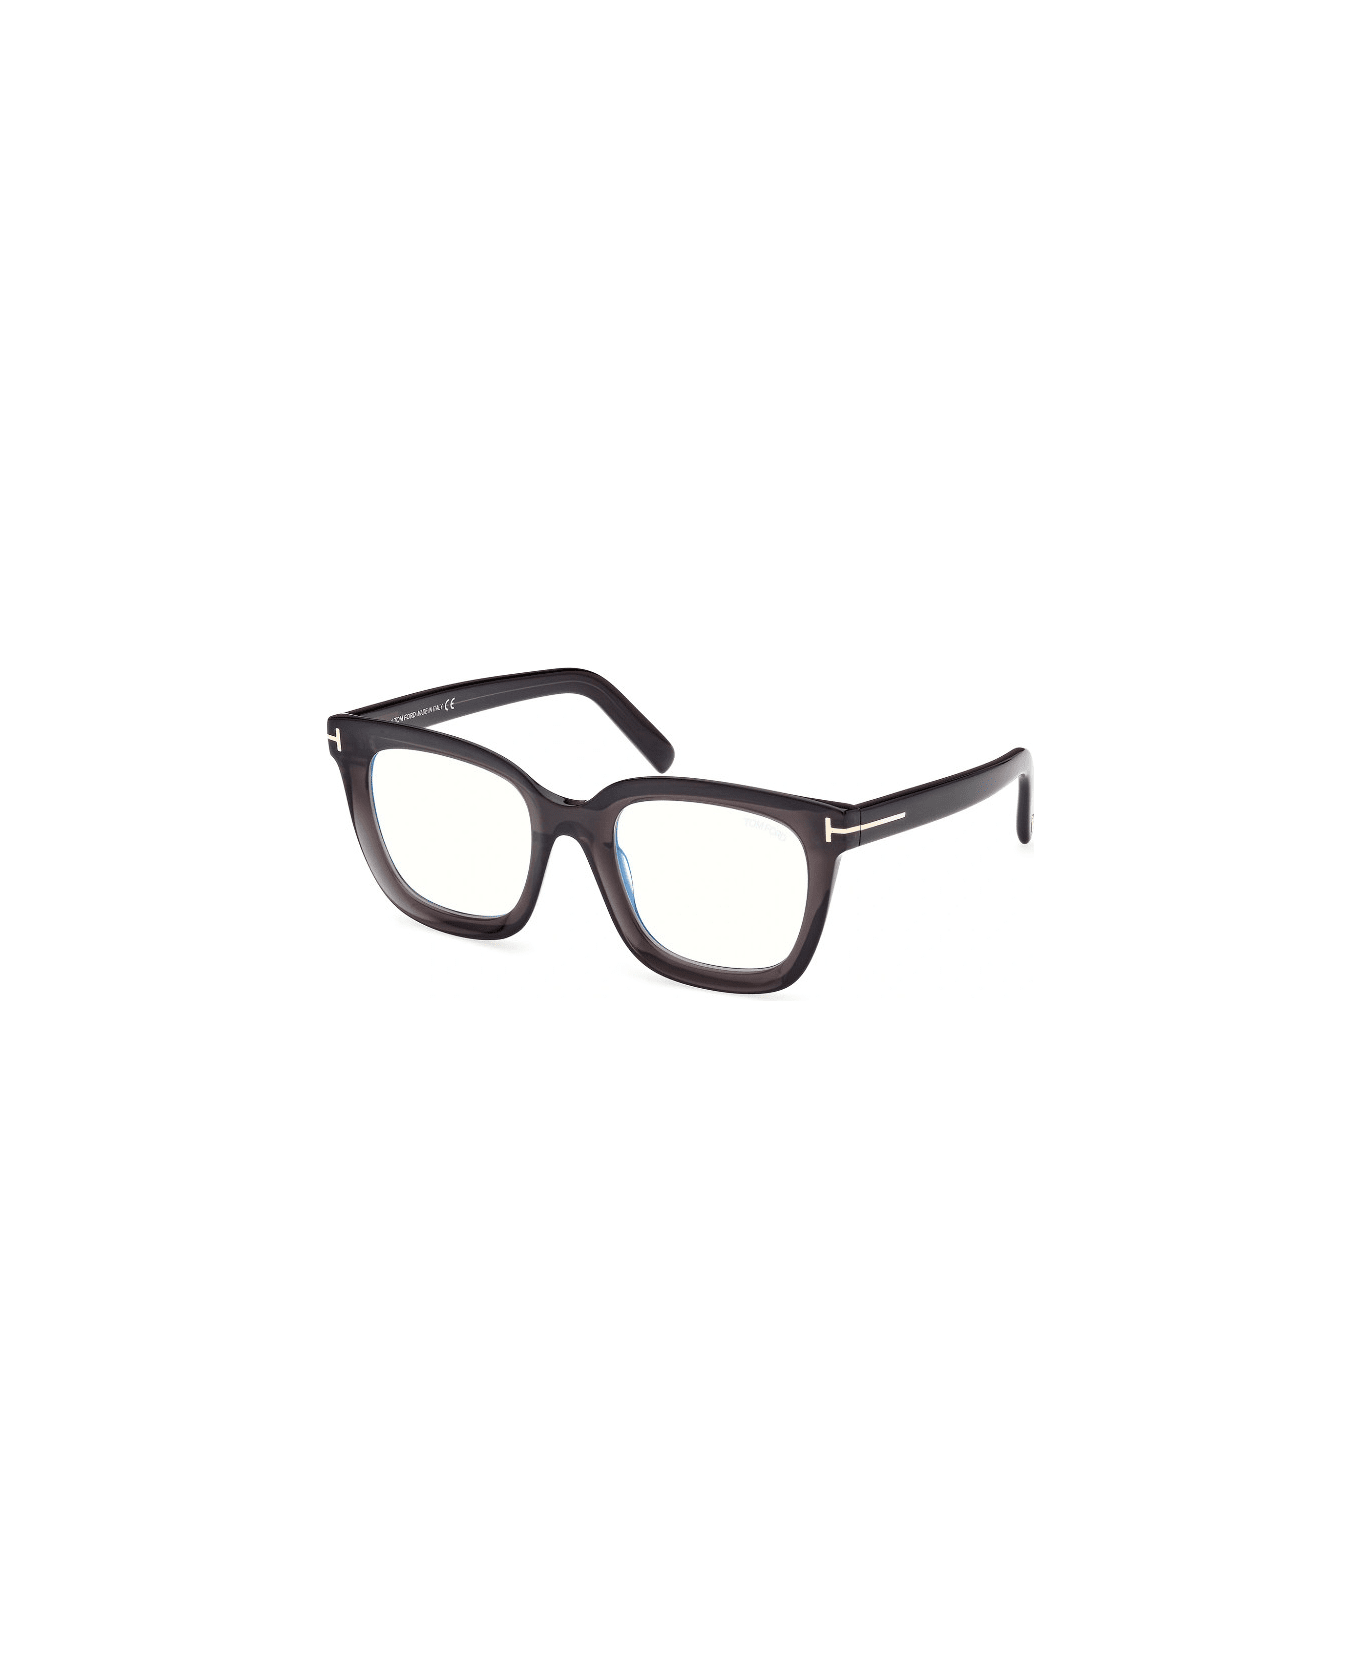 Tom Ford Eyewear TF5880 020 Glasses アイウェア